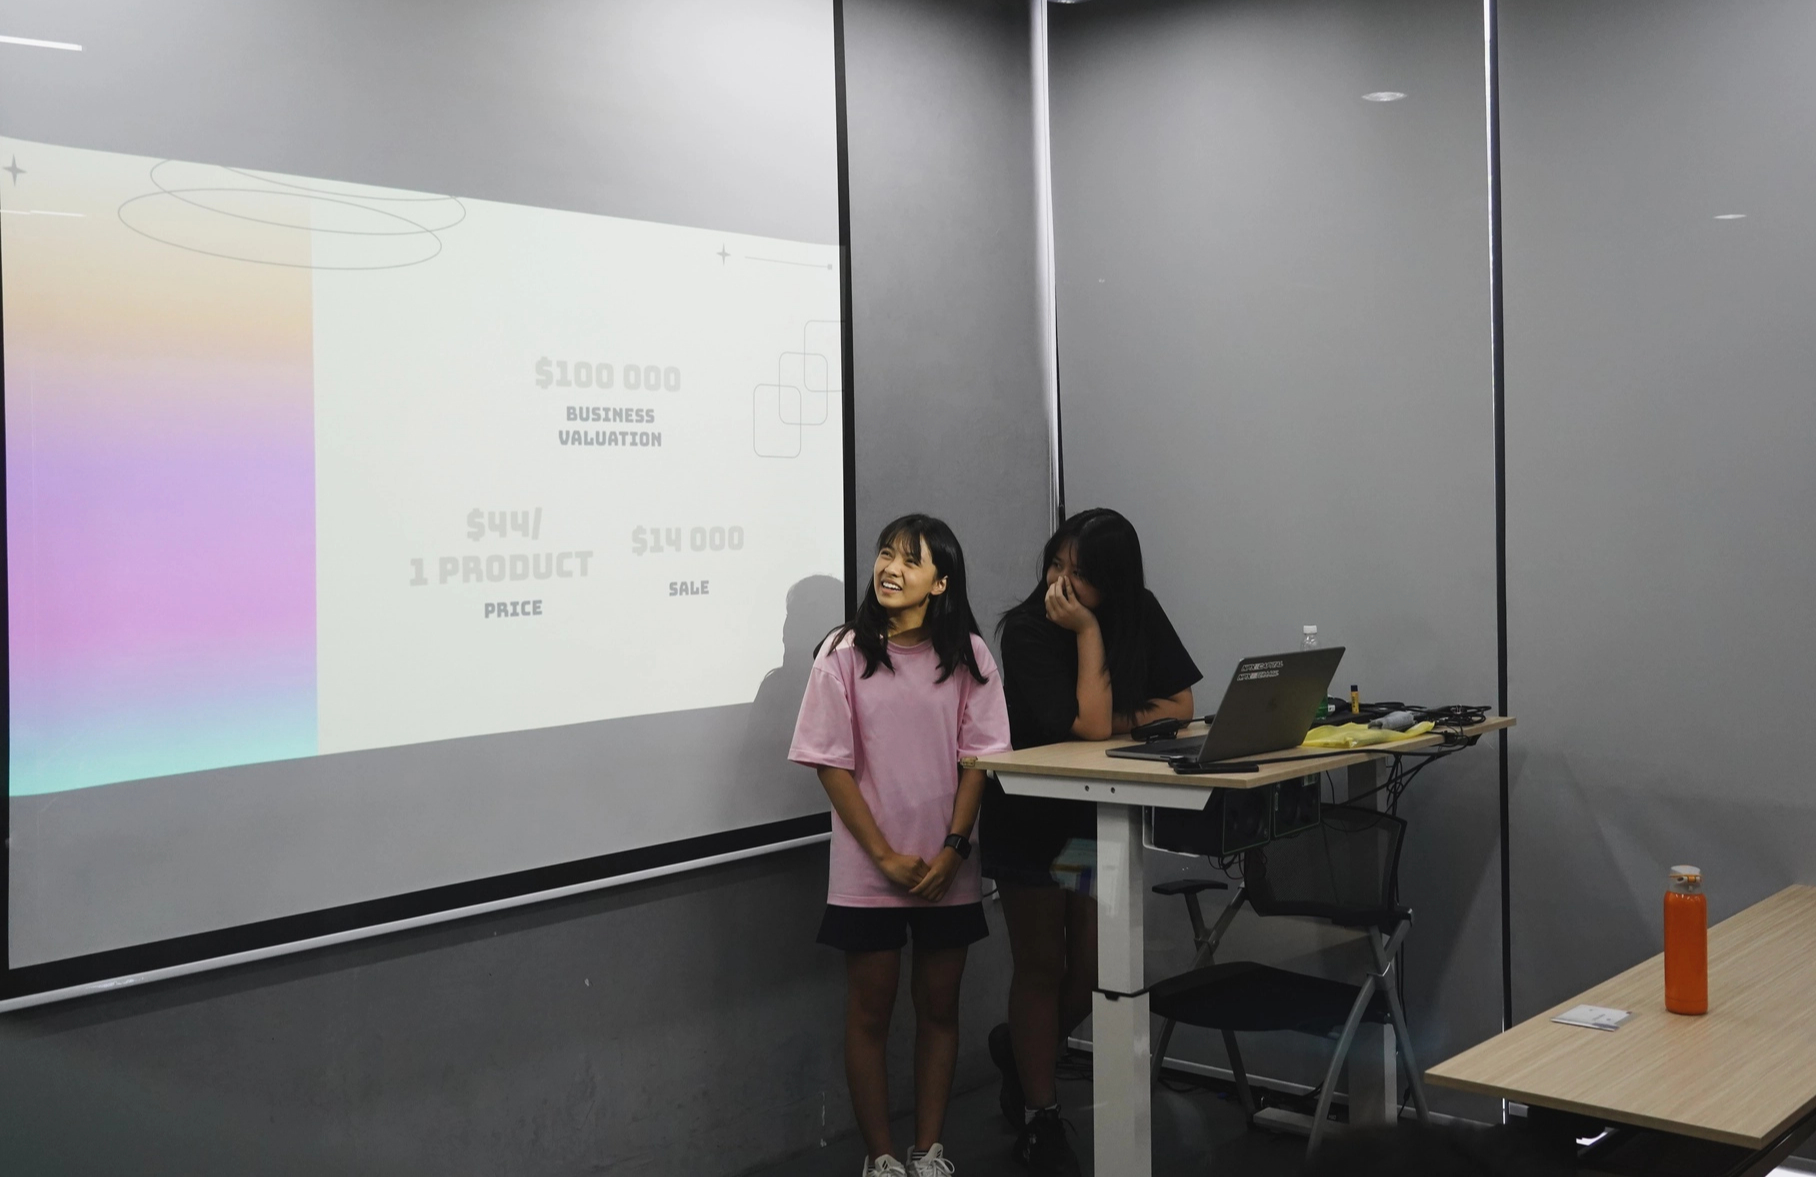 Buổi học khởi nghiệp tại một ngôi trường quốc tế ở Hà Nội: Khi học sinh được lên ý tưởng kinh doanh - Ảnh 2.